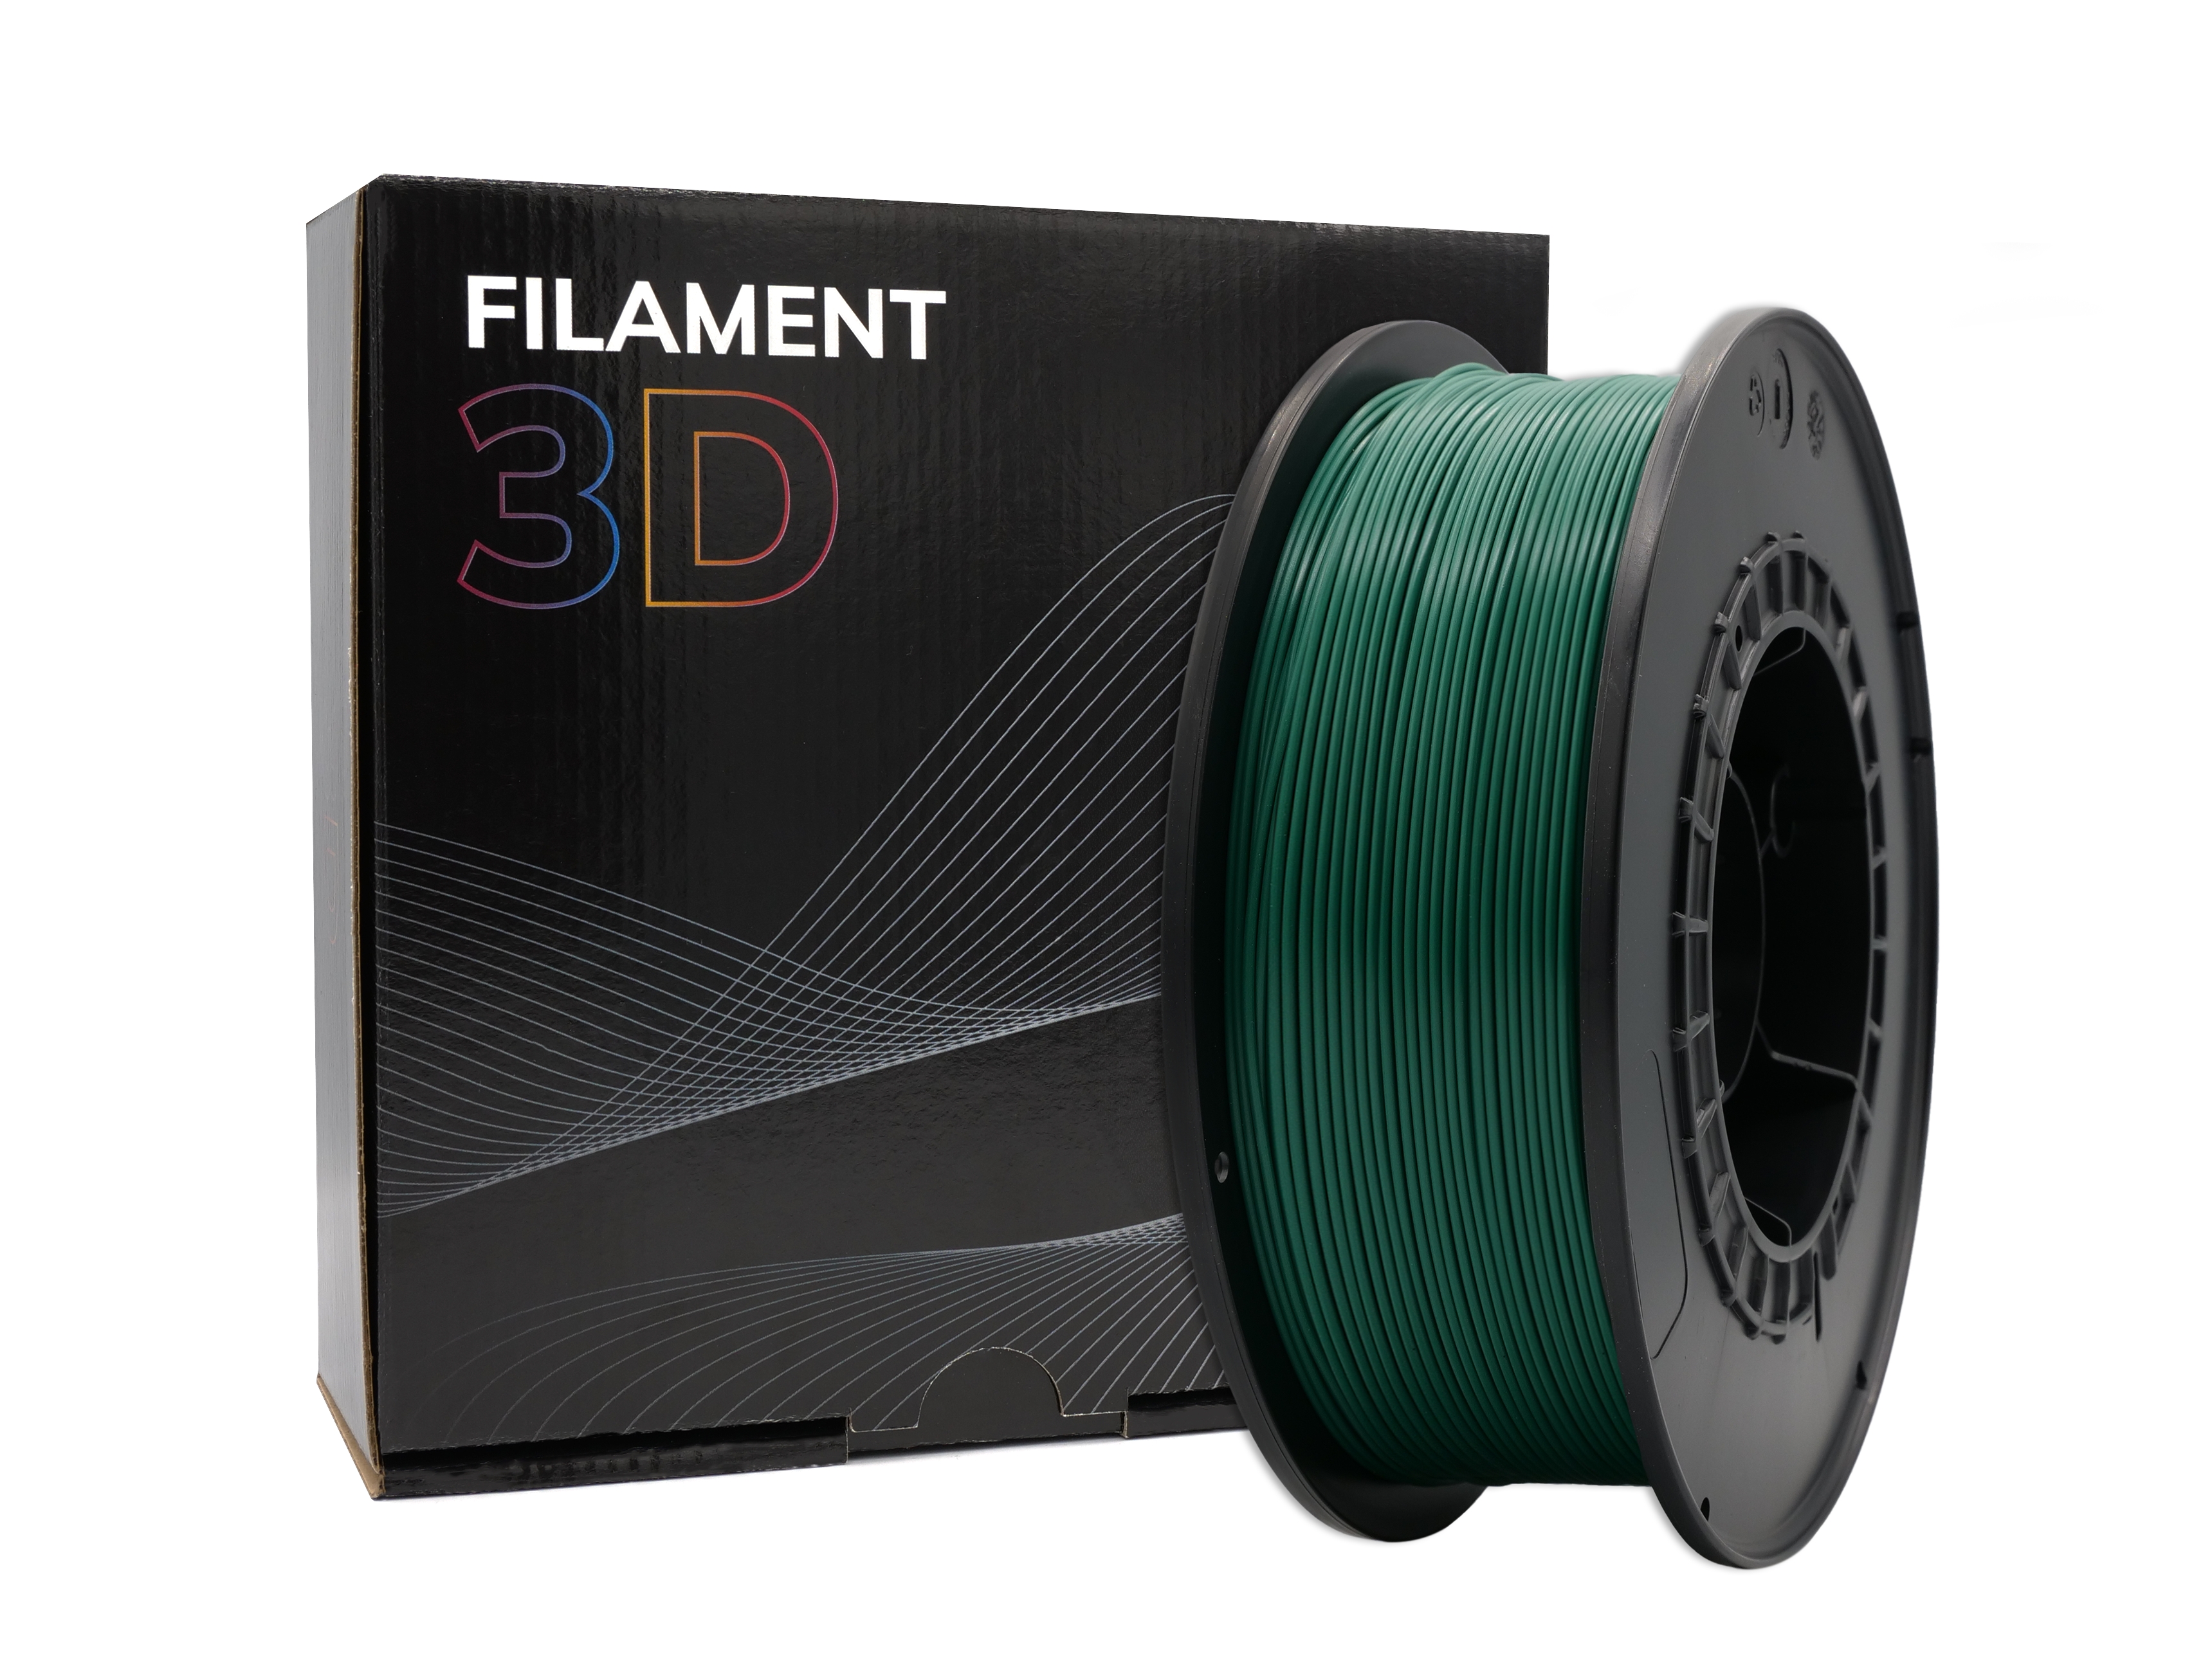 Filament PLA 3D - Diamètre 1.75mm - Bobine 1kg - Couleur Vert Foncé